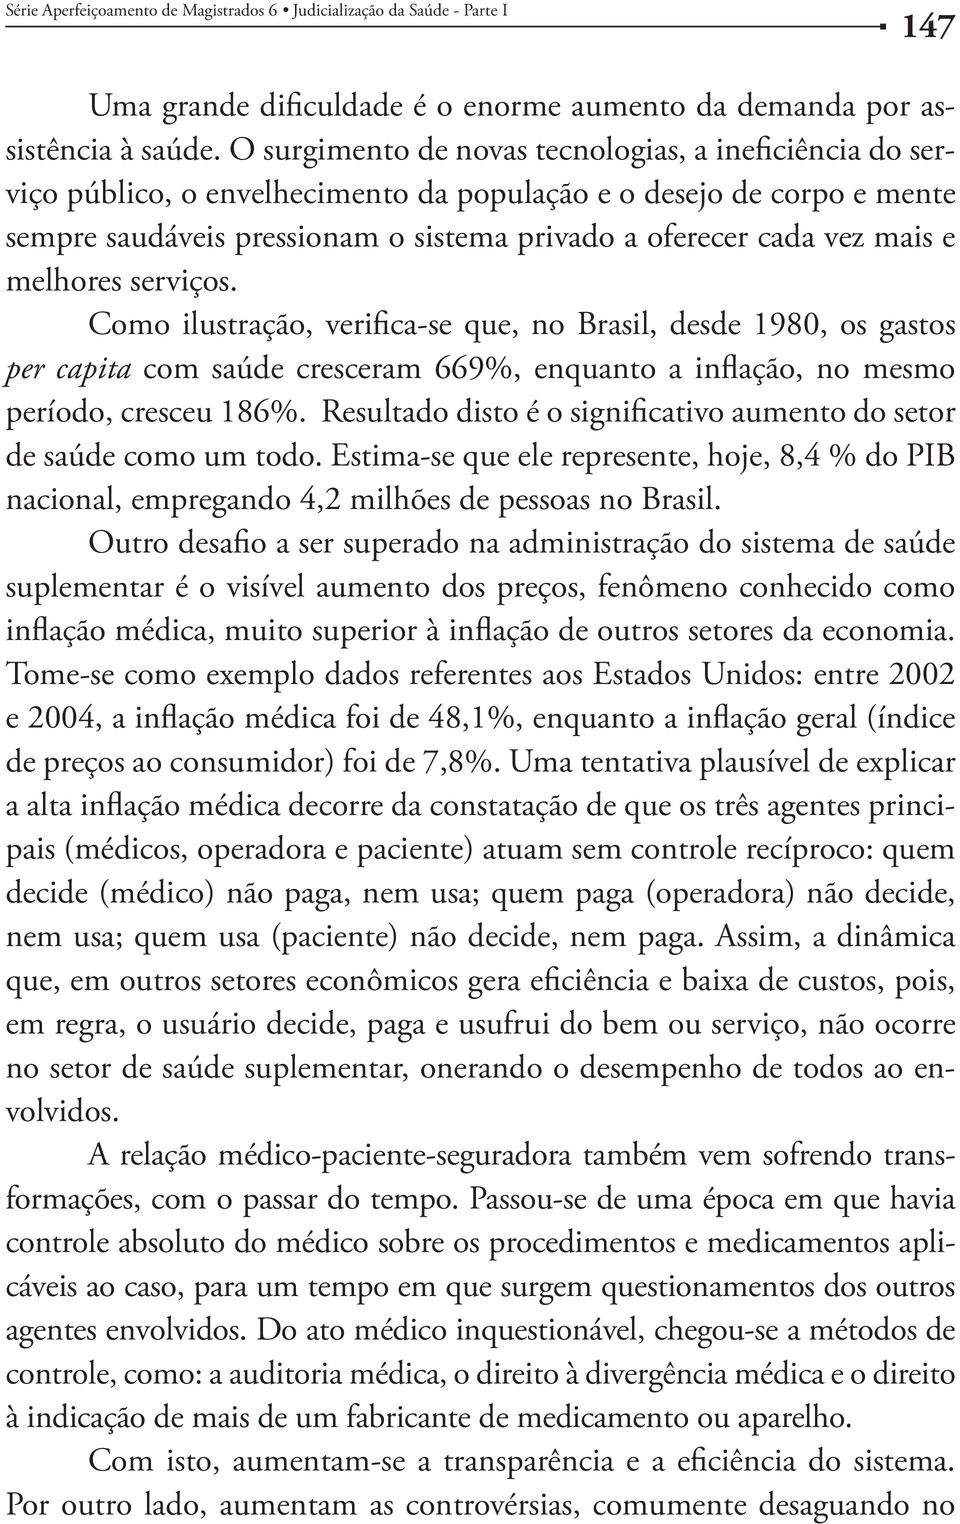 e melhores serviços. Como ilustração, verifica-se que, no Brasil, desde 1980, os gastos per capita com saúde cresceram 669%, enquanto a inflação, no mesmo período, cresceu 186%.